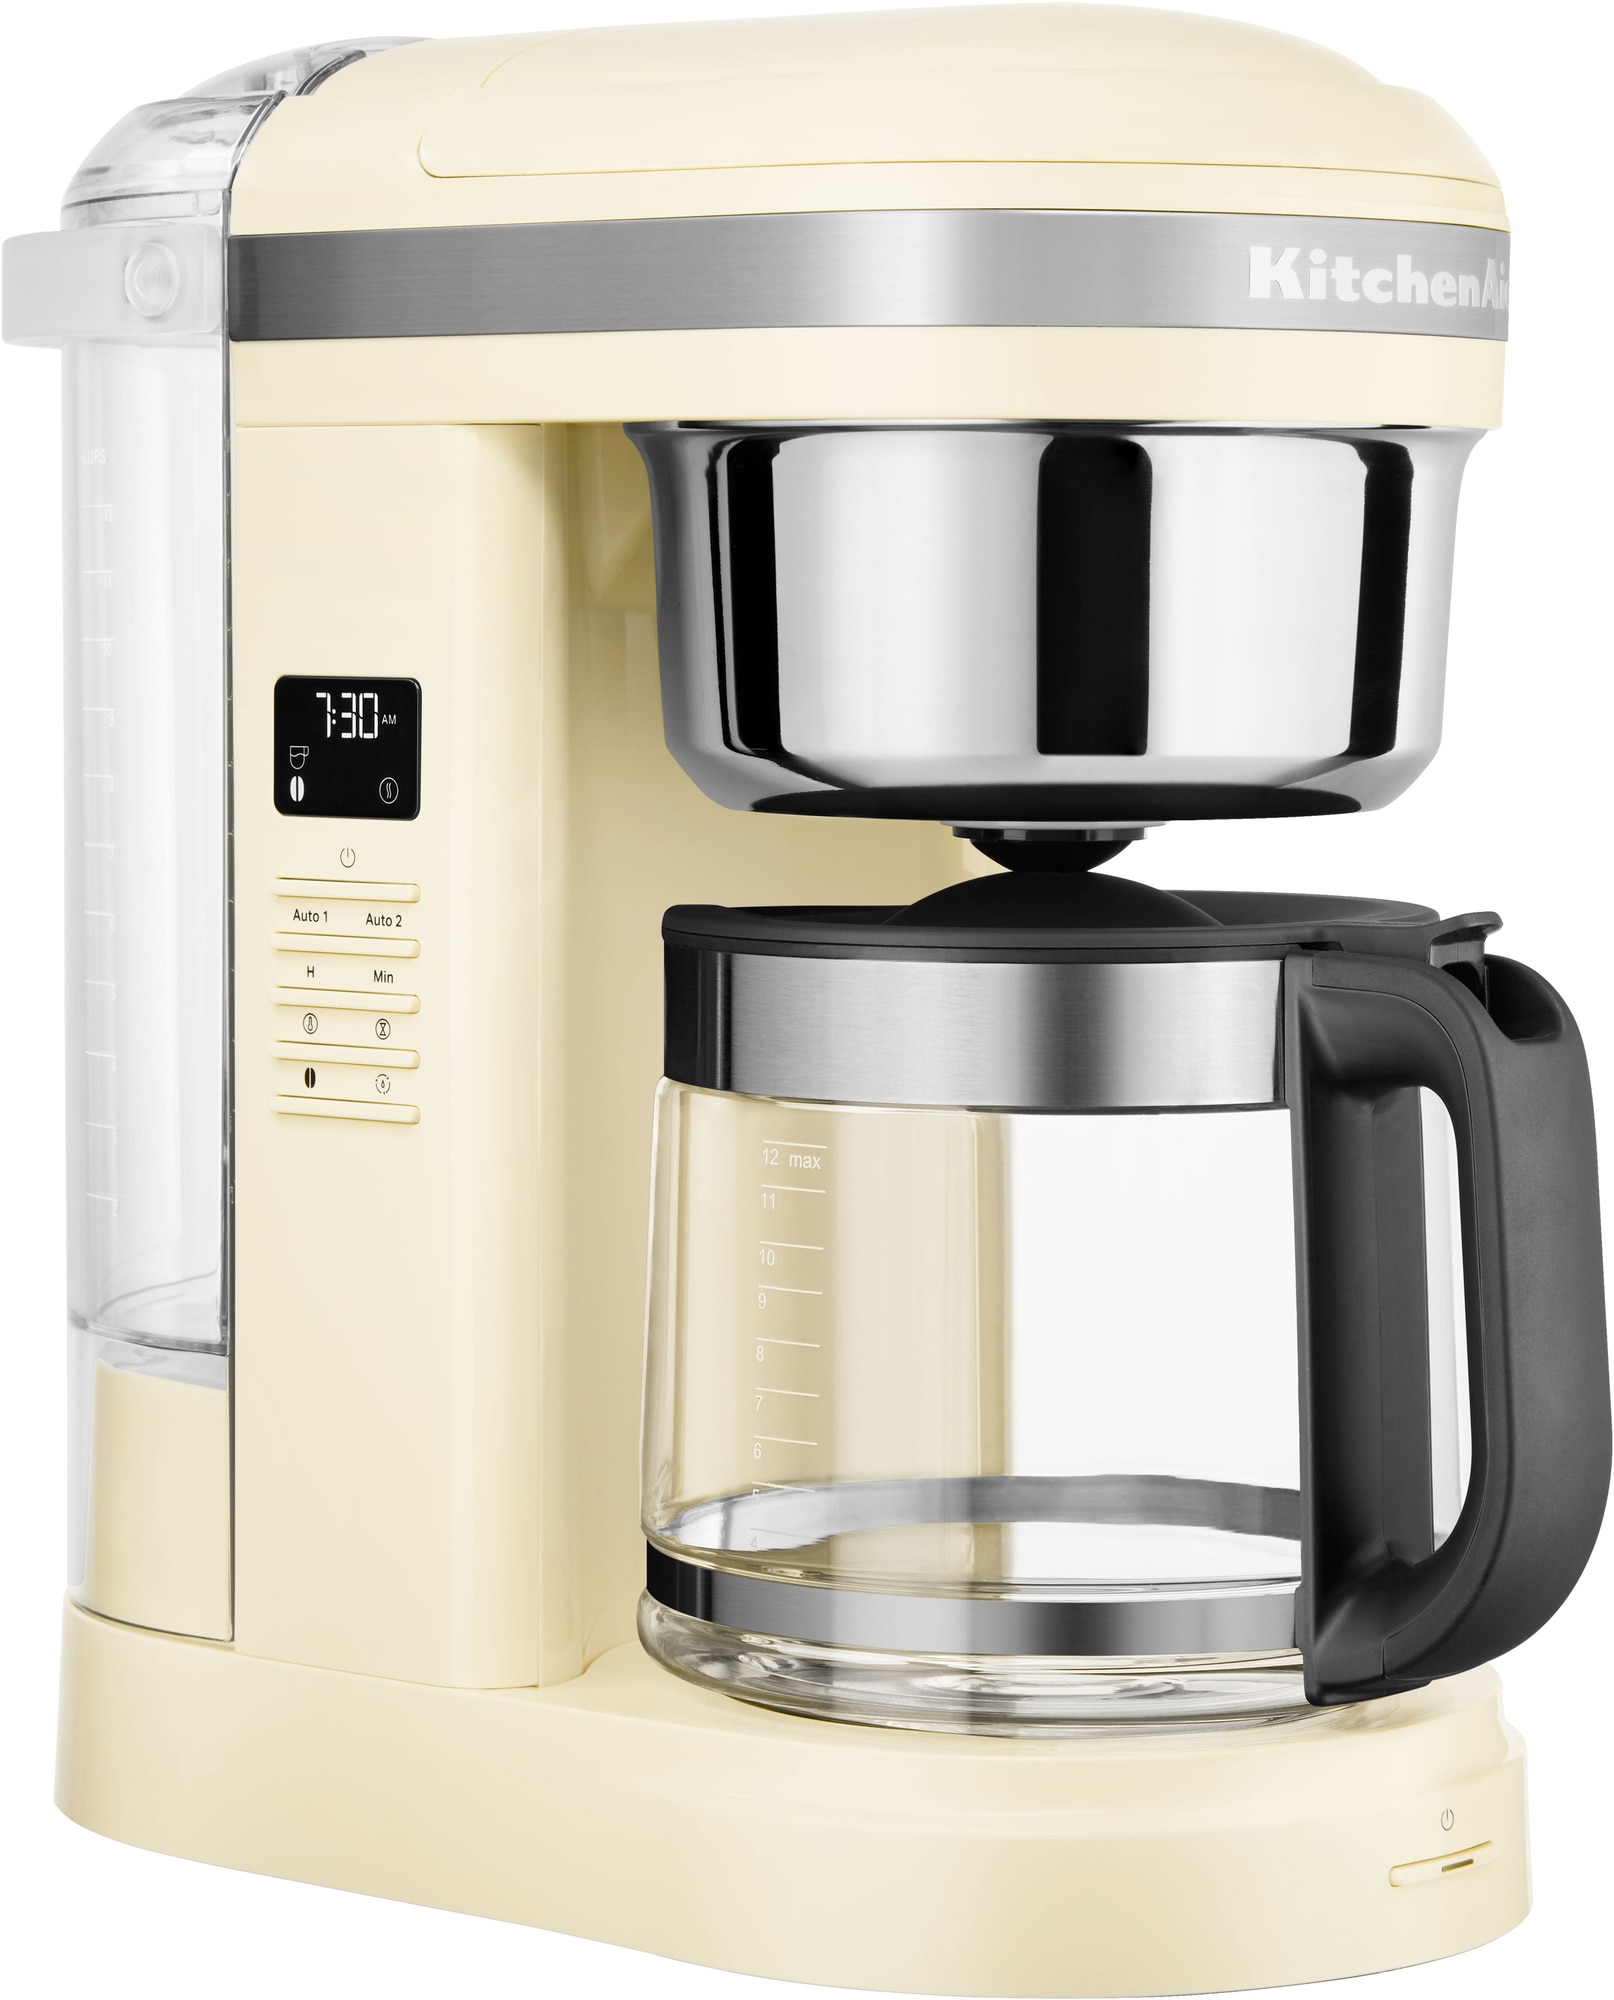 KitchenAid drypkaffemaskine 5KCM1209EAC (almond cream)